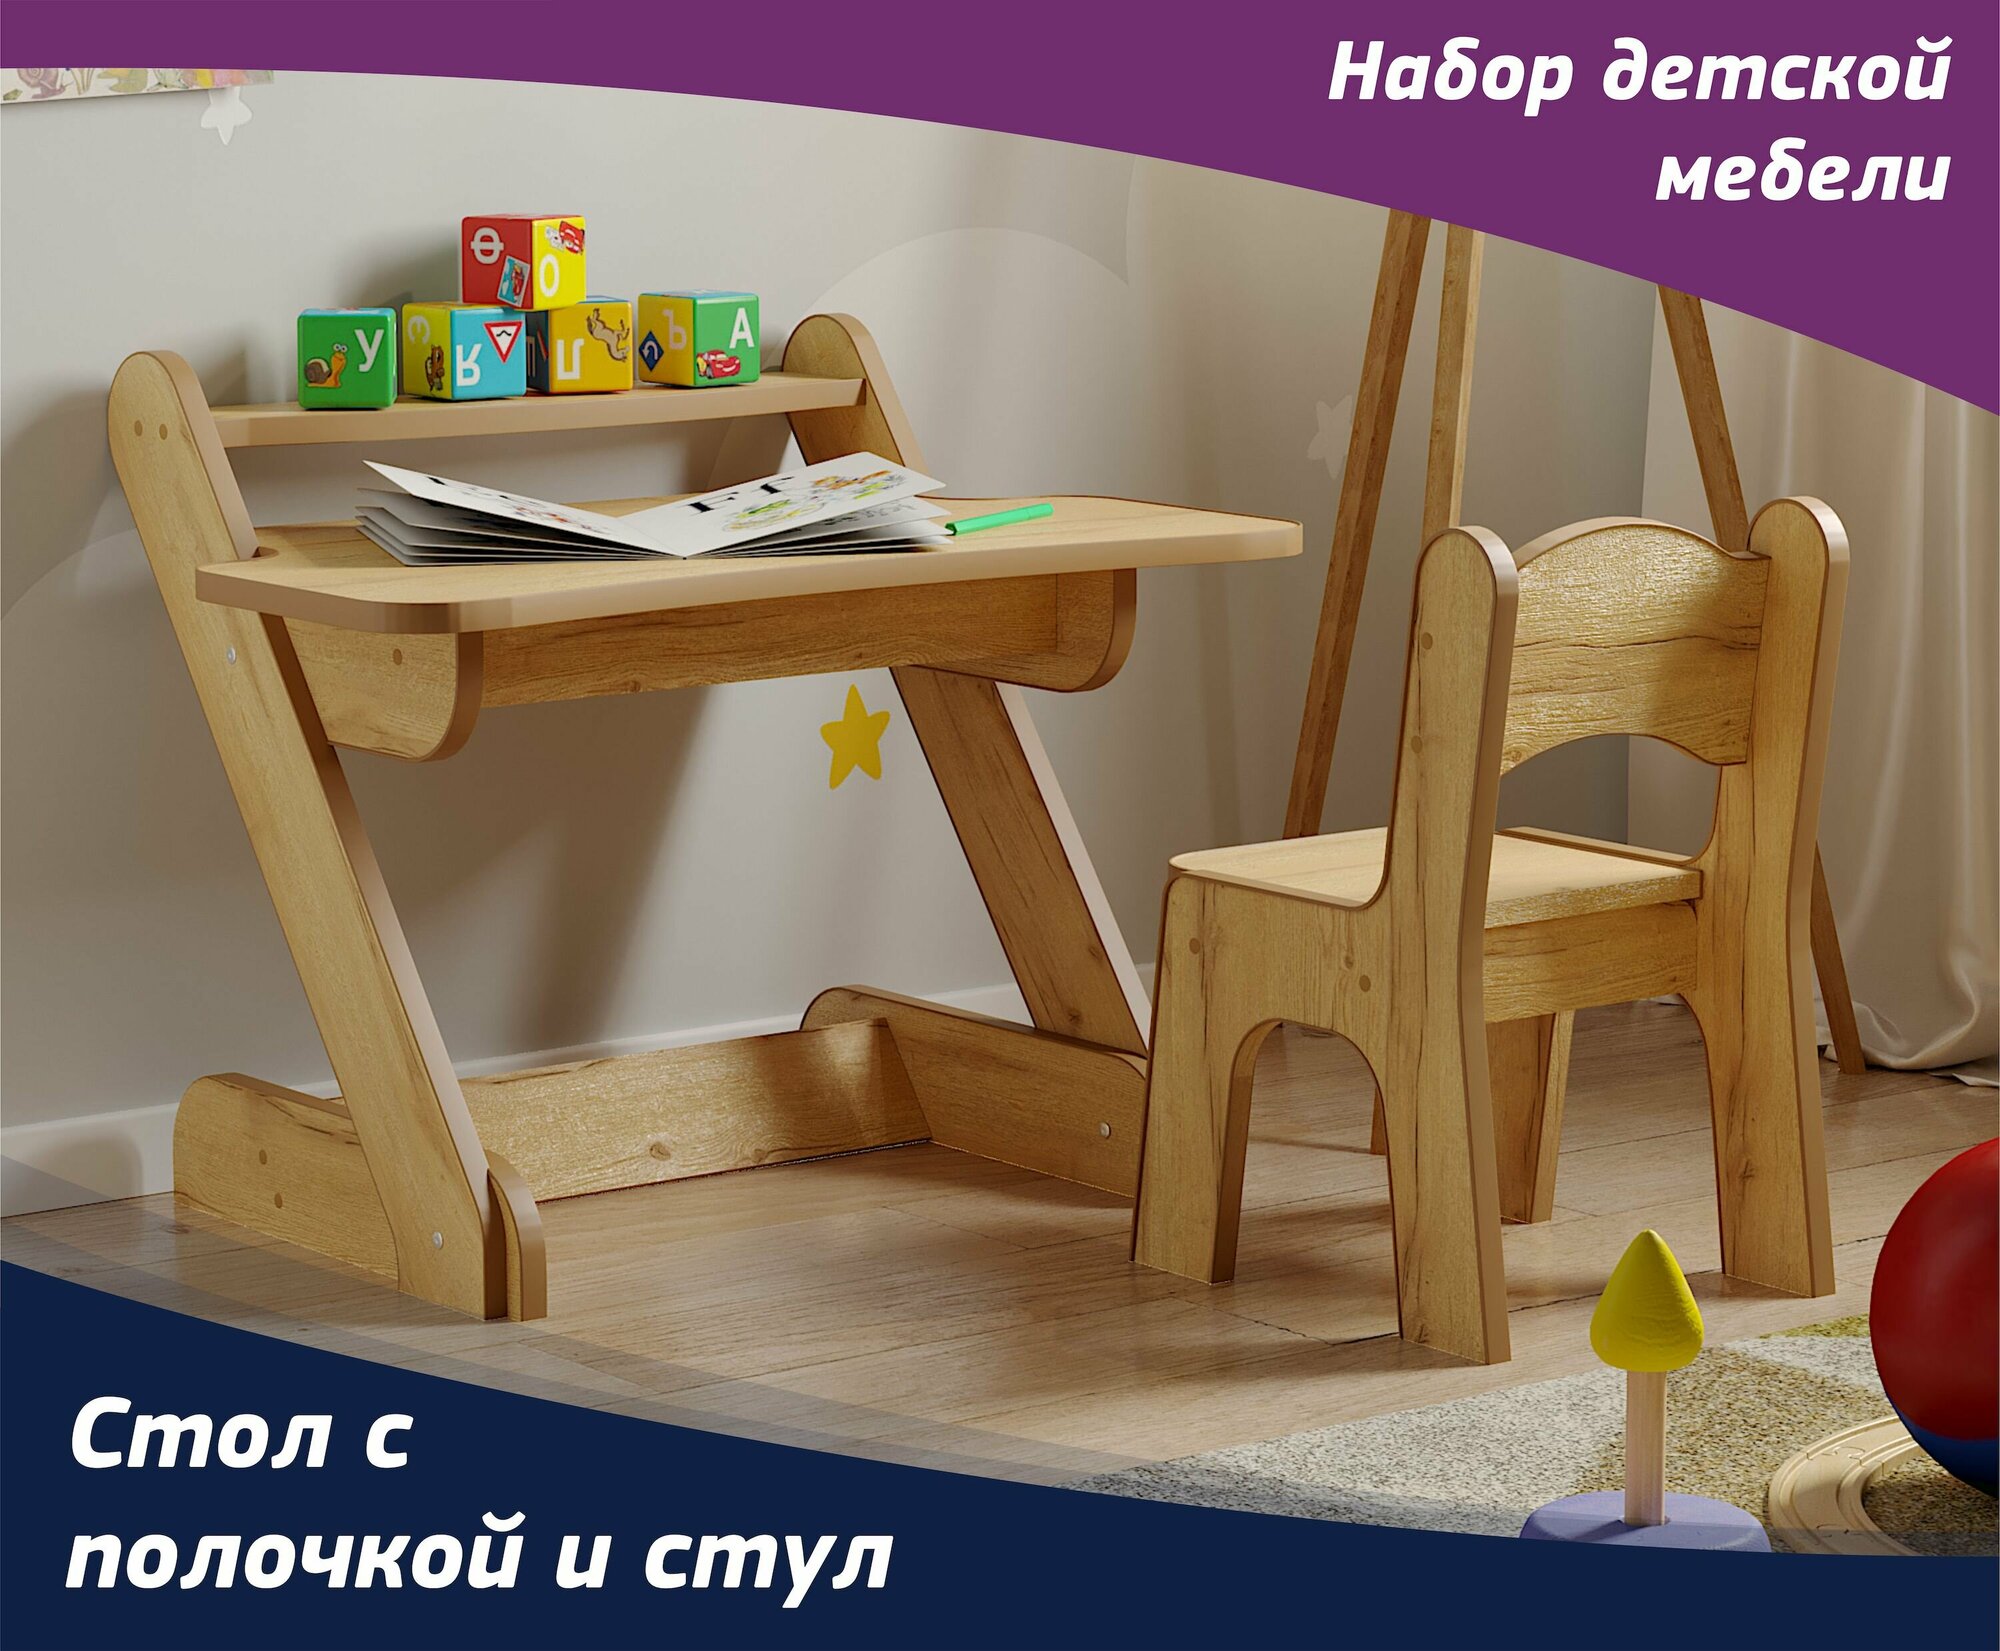 Комплект деткой мебели - стол с полочкой и стул для детей от 1,5 до 5 лет. Цвет набора "Дуб Золотой крафт".